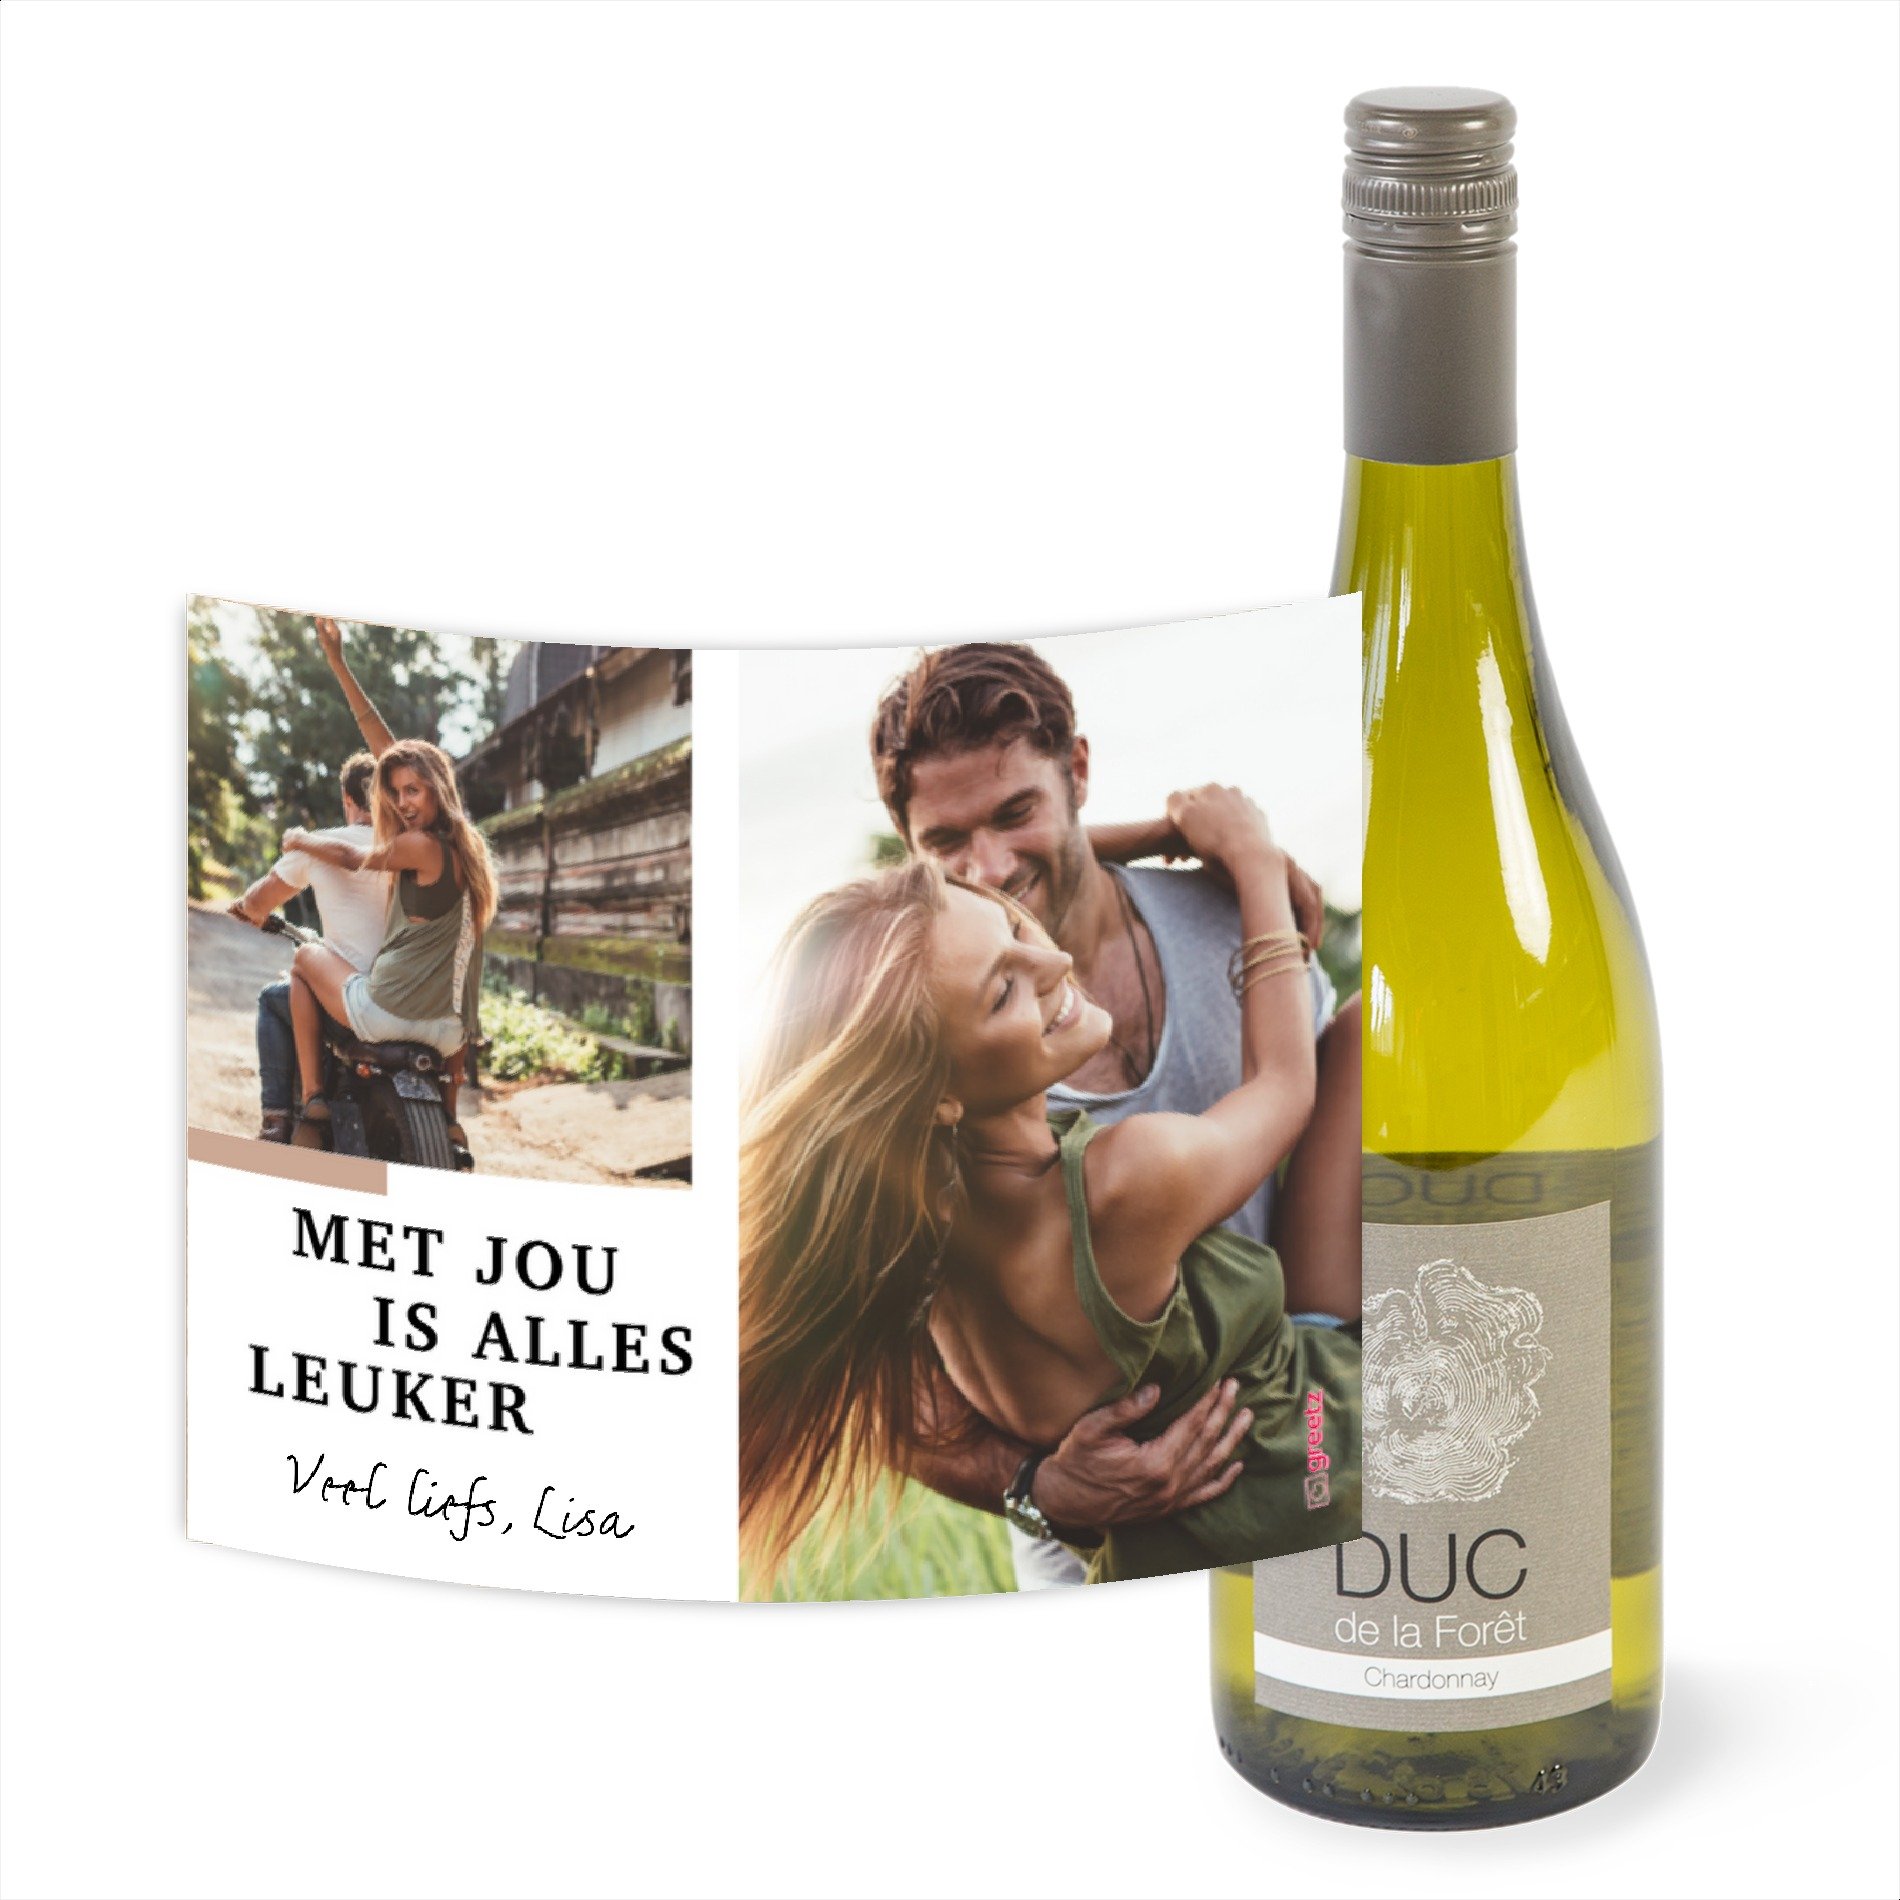 Duc de la Foret - Chardonnay - Love met eigen foto tekst - 750 ml